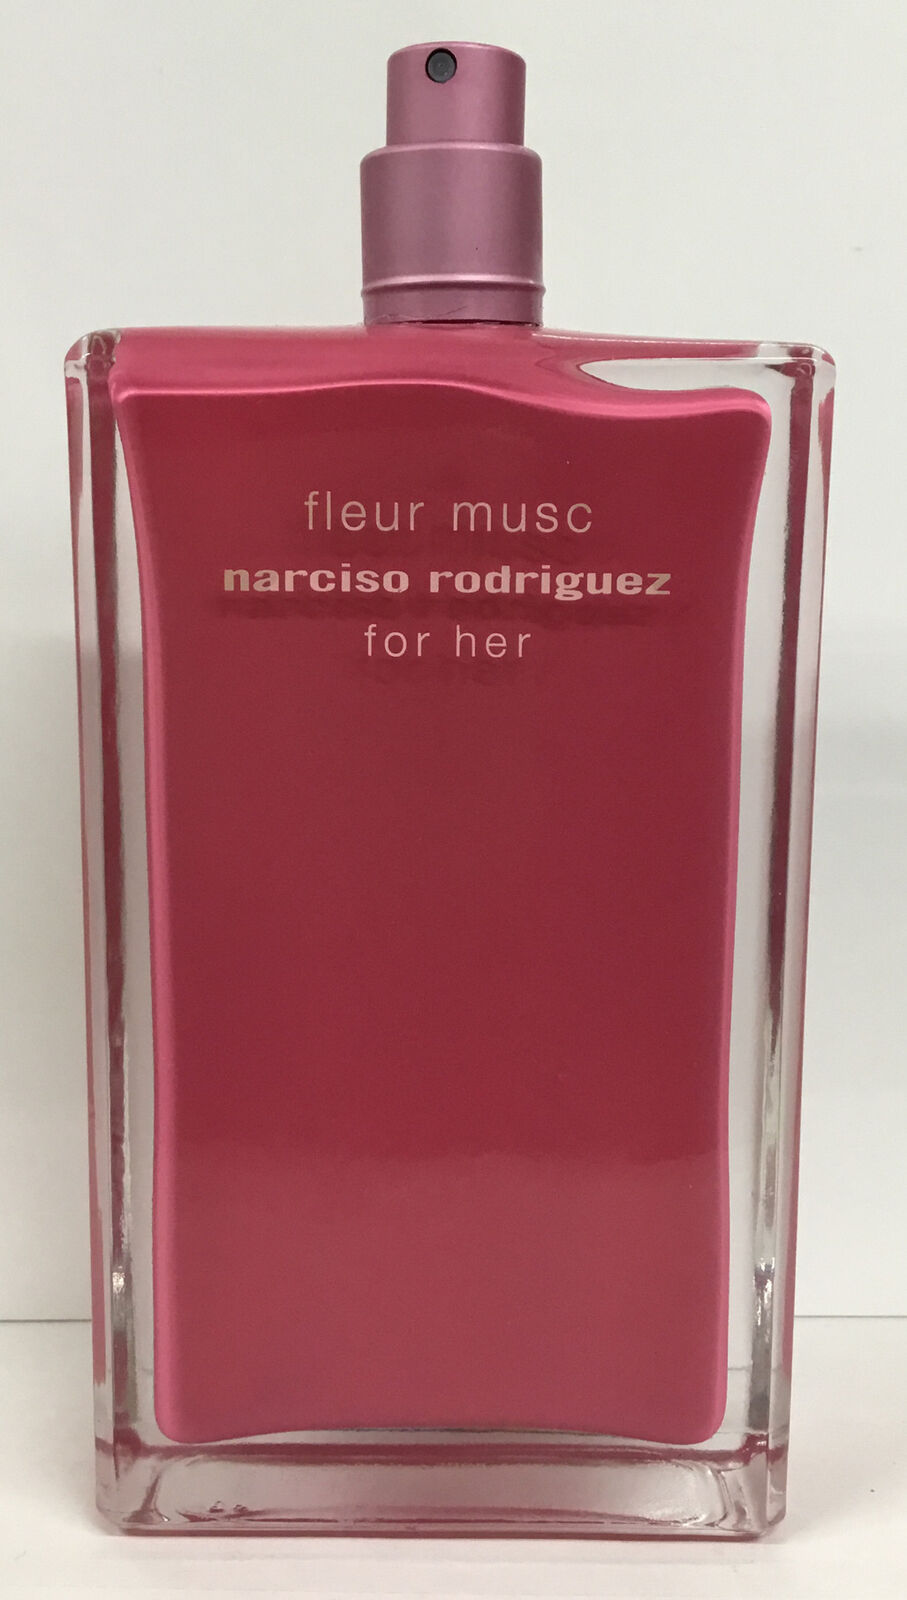 Narciso Rodriguez Fleur Musc For Her Eau De Parfum 3.3oz As Pictured No Cap